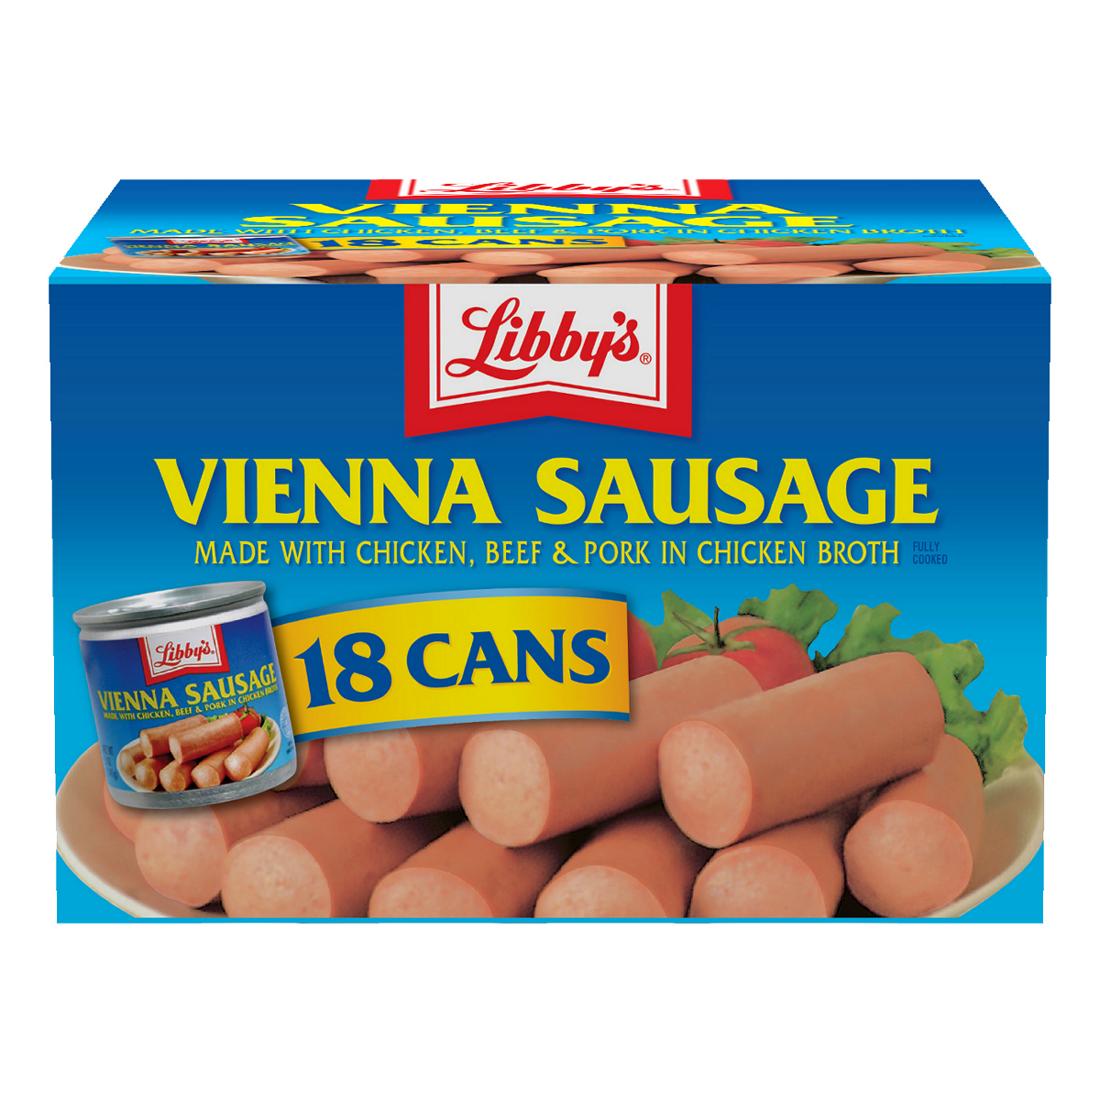 Xúc xích đóng hộp Libby's Vienna Sausage thùng 18 lon của Mỹ